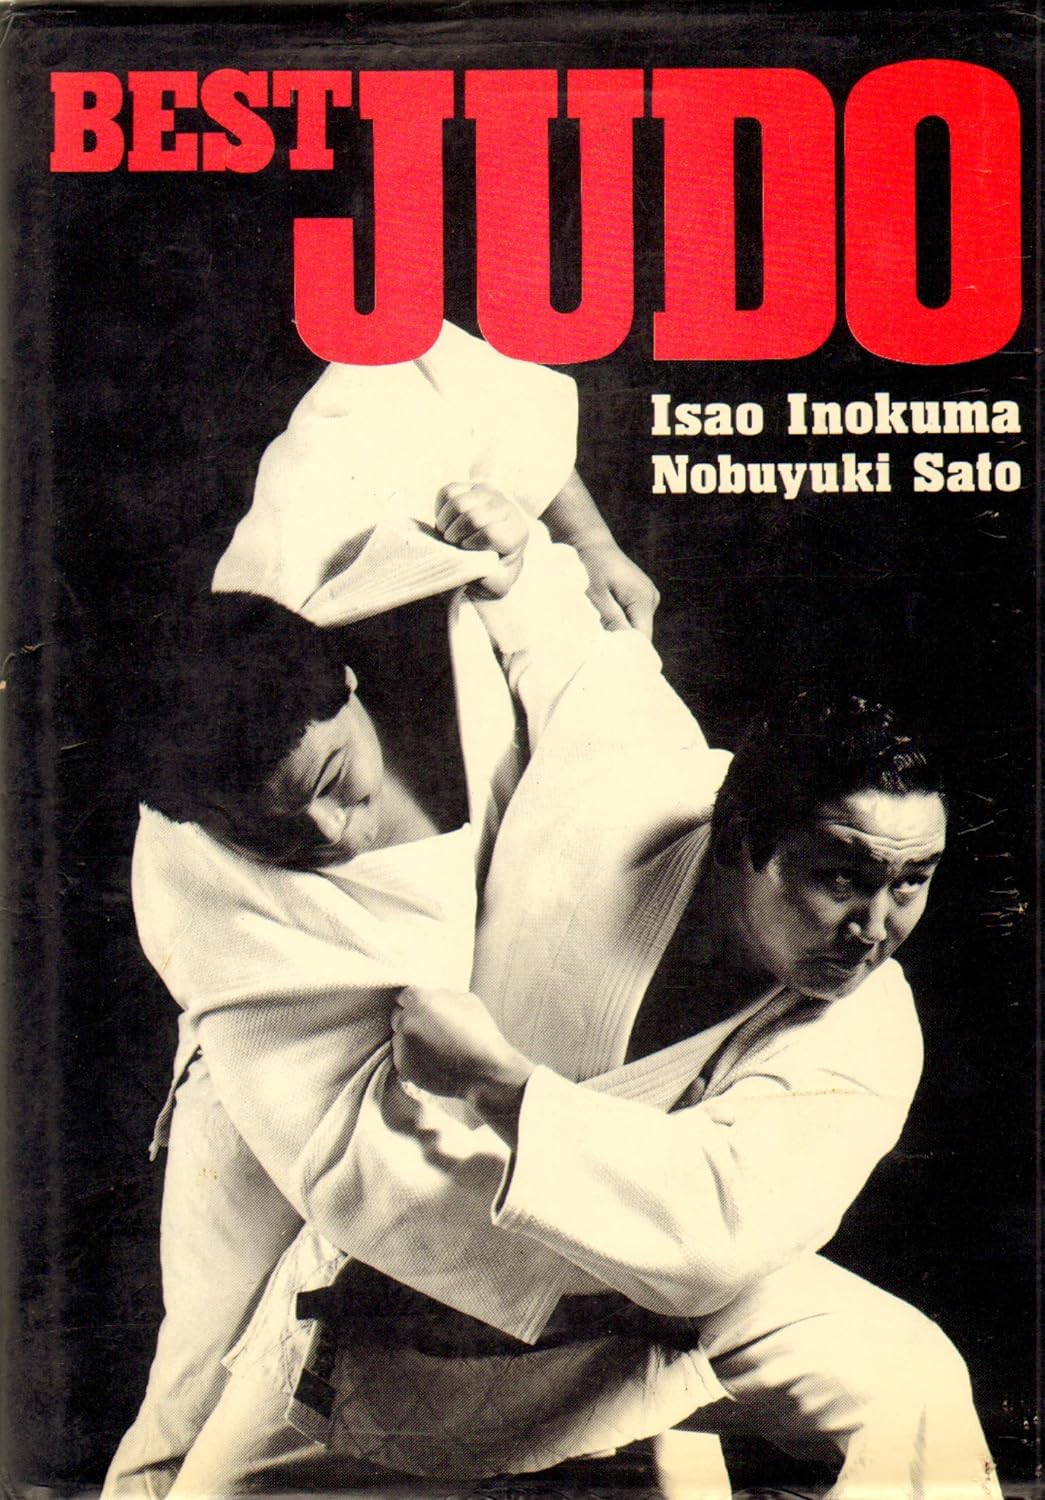 Best Judo Book by Isao Inokuma & Nobuyuki Sato (Hardcover) (Preowned)